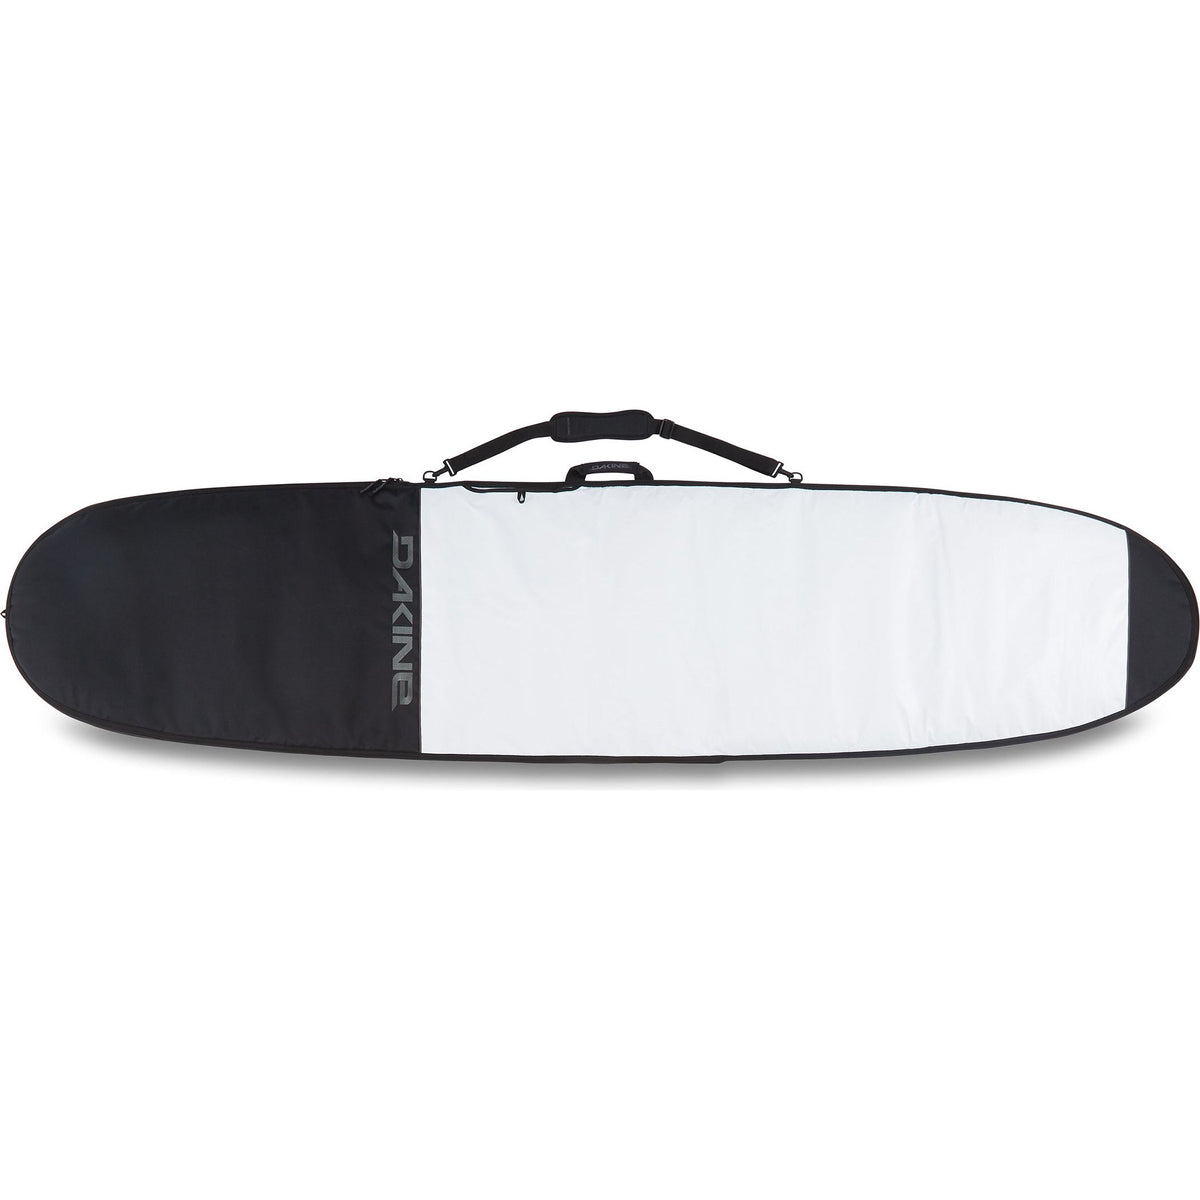 Dakine Daylight Noserider Surfboard Bag